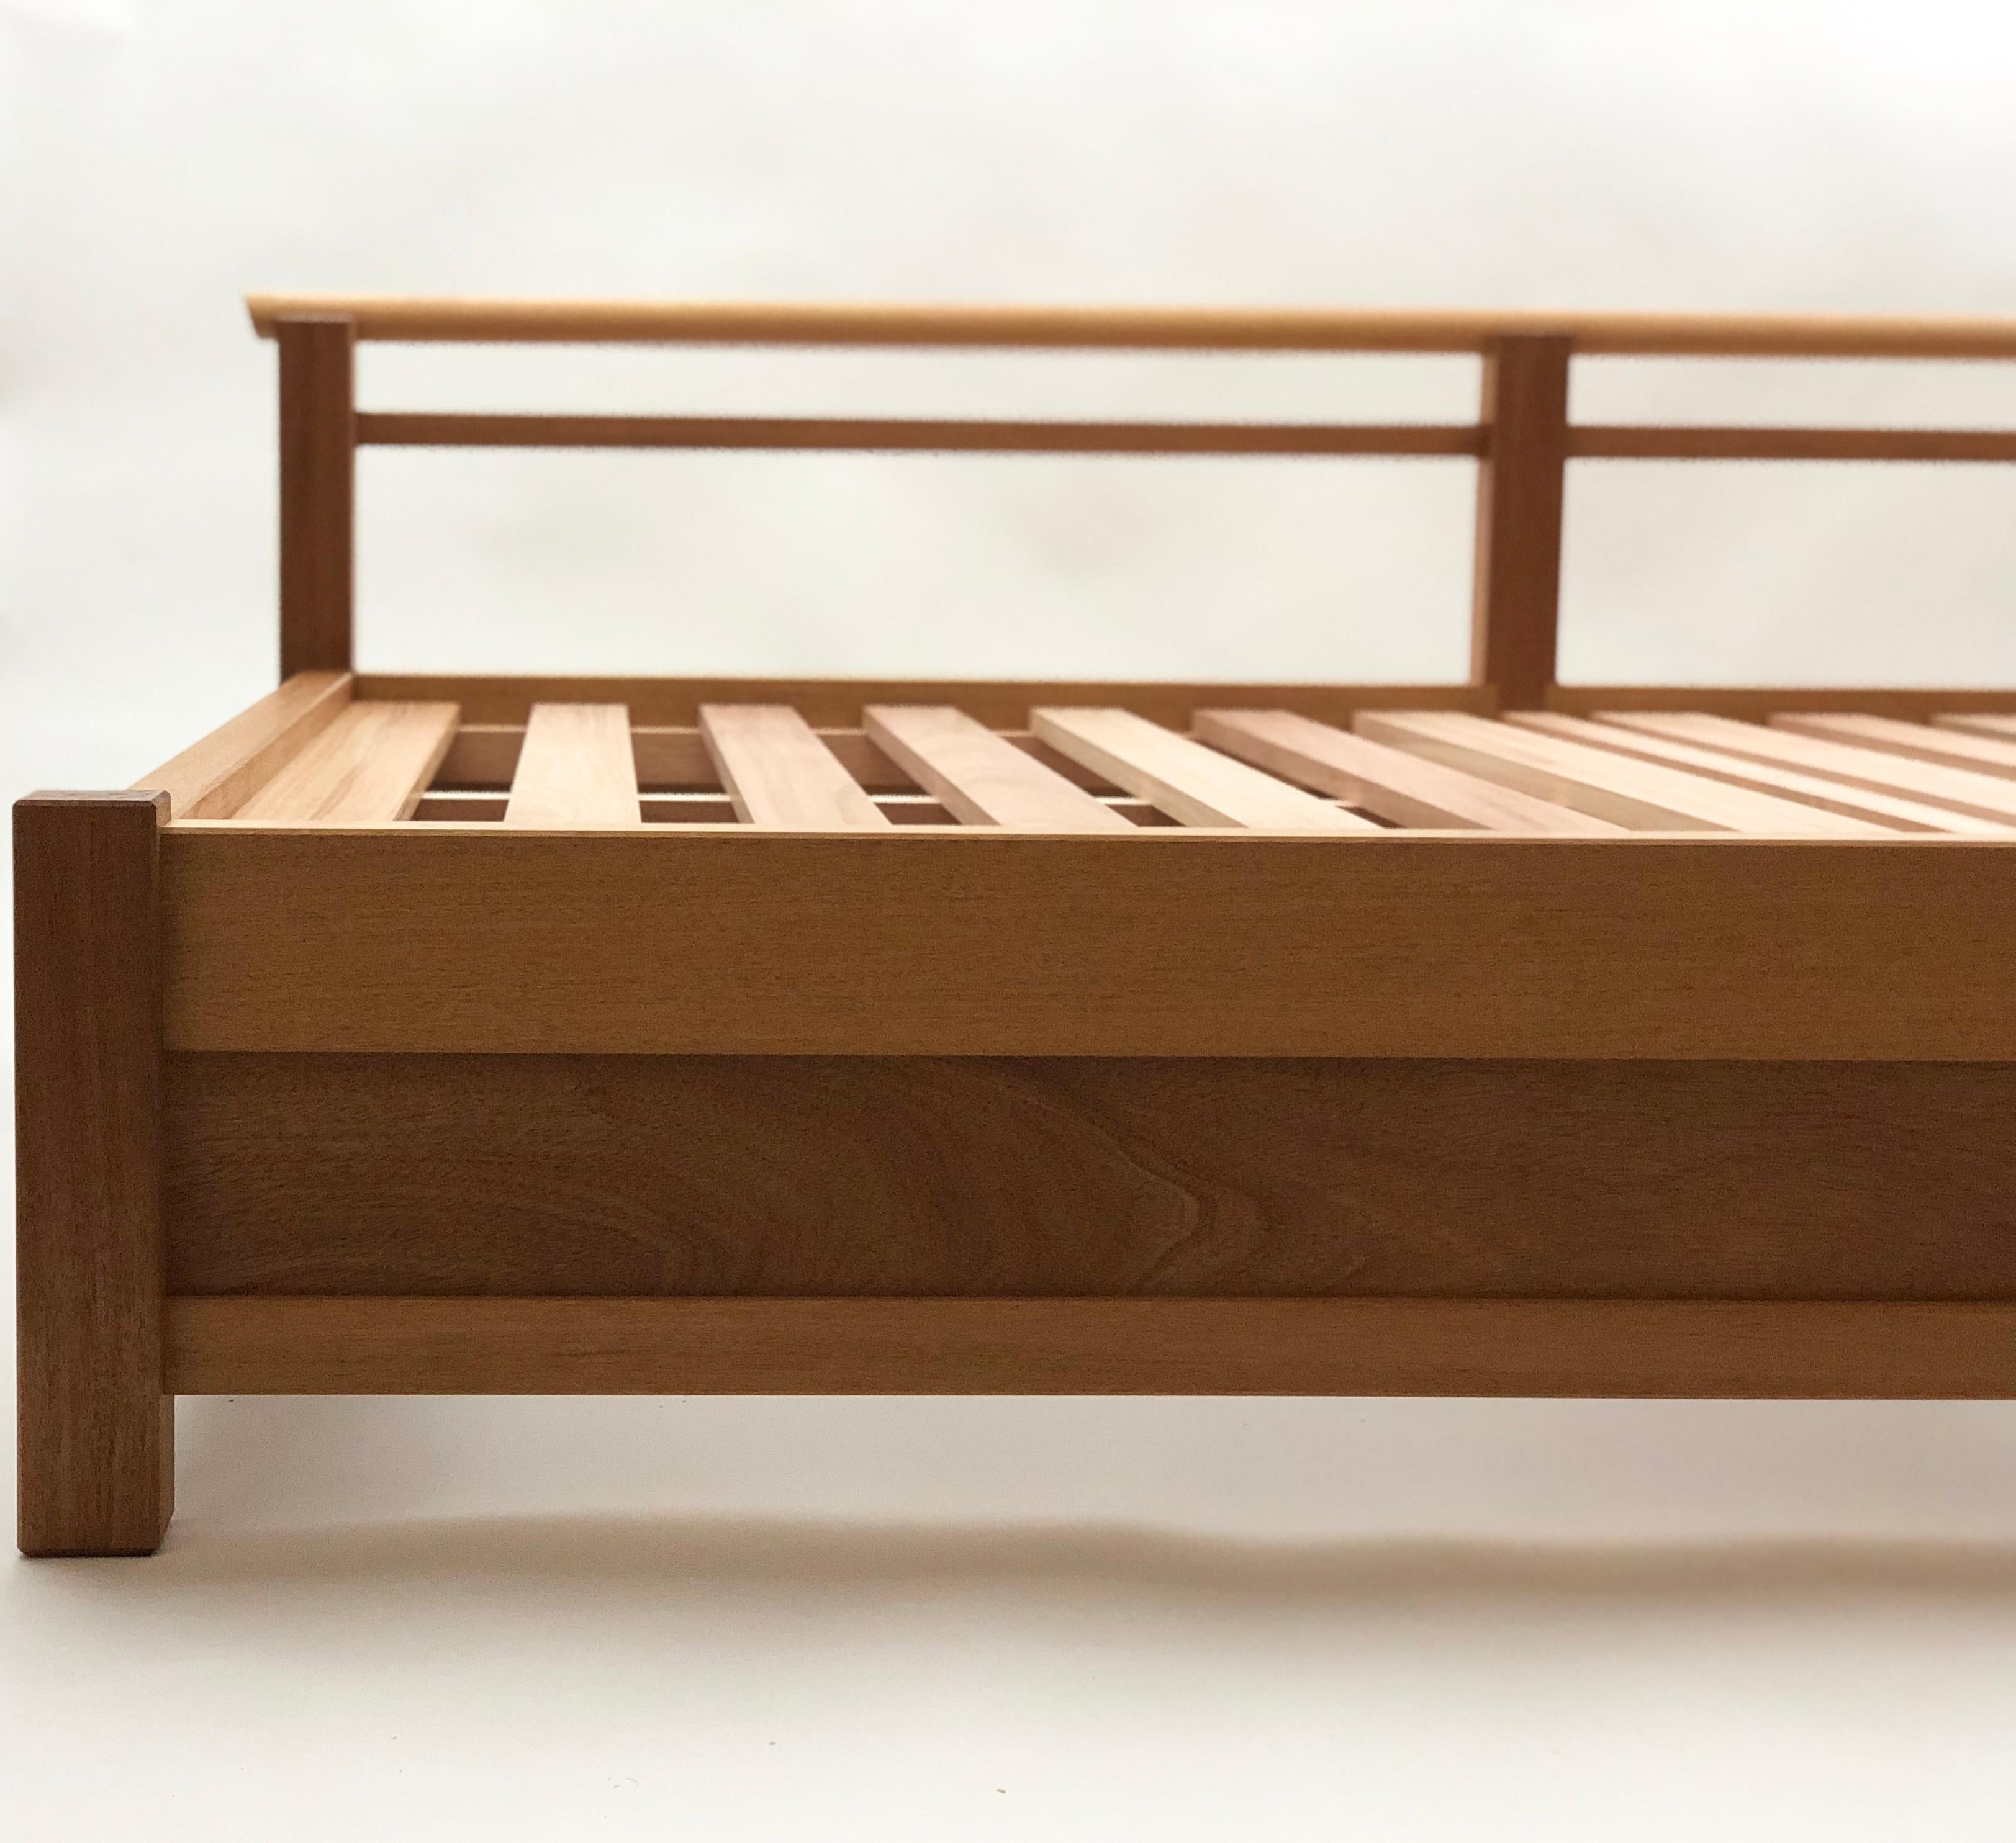 Dieses Daybed wurde von der Uji-Brücke am Naiku-Tempel in Japan inspiriert. Es ist aus honduranischem Mahagoni gefertigt und für den Innen- und Außenbereich geeignet. Dieses Tagesbett ist auch in geöltem Nussbaum oder geölter Esche erhältlich.